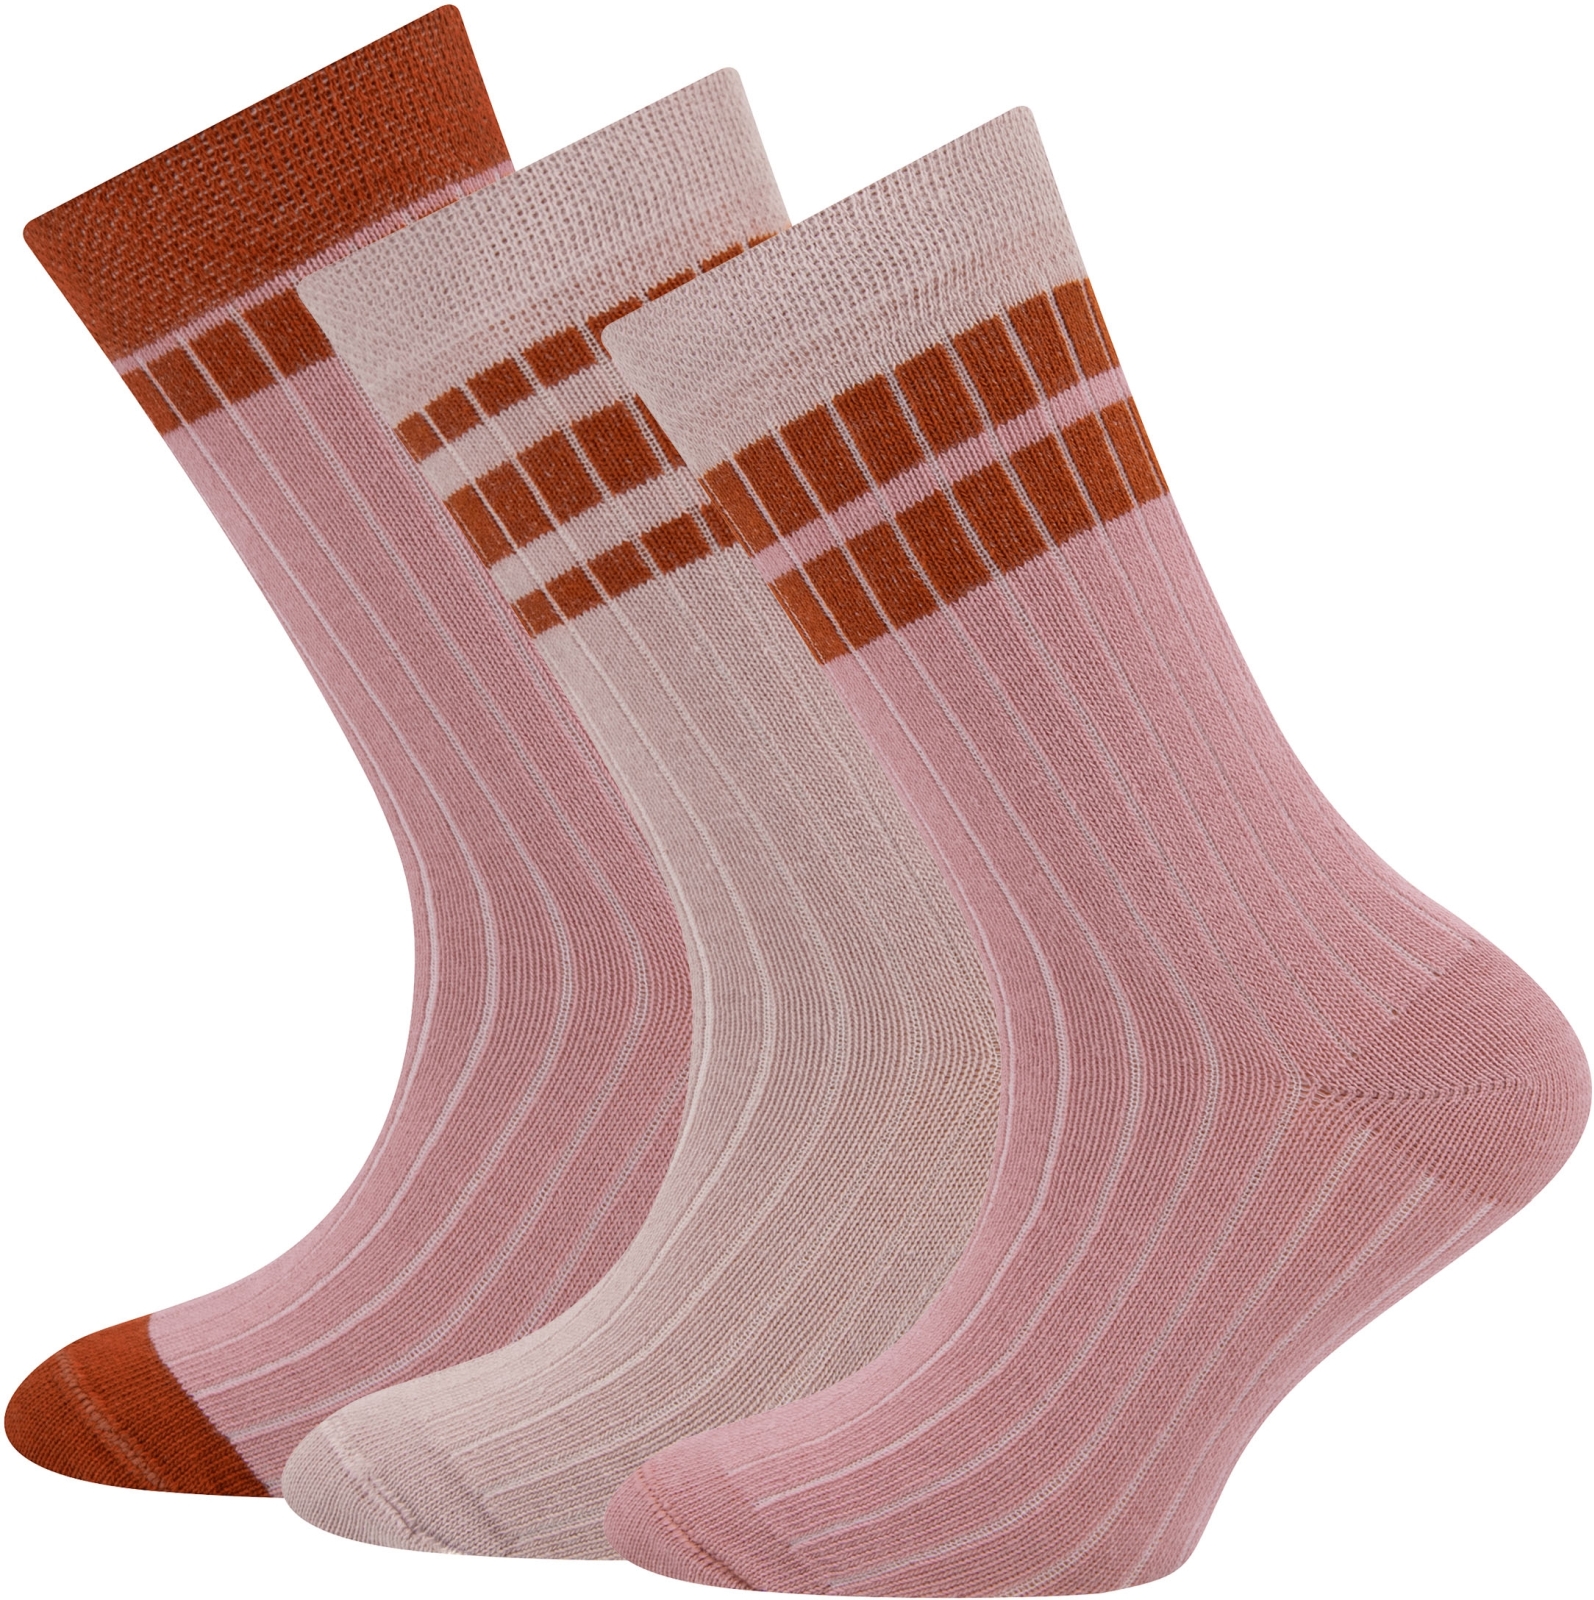 Ewers Socken 3er Pack Rippe/Ringel - 0001 35-38